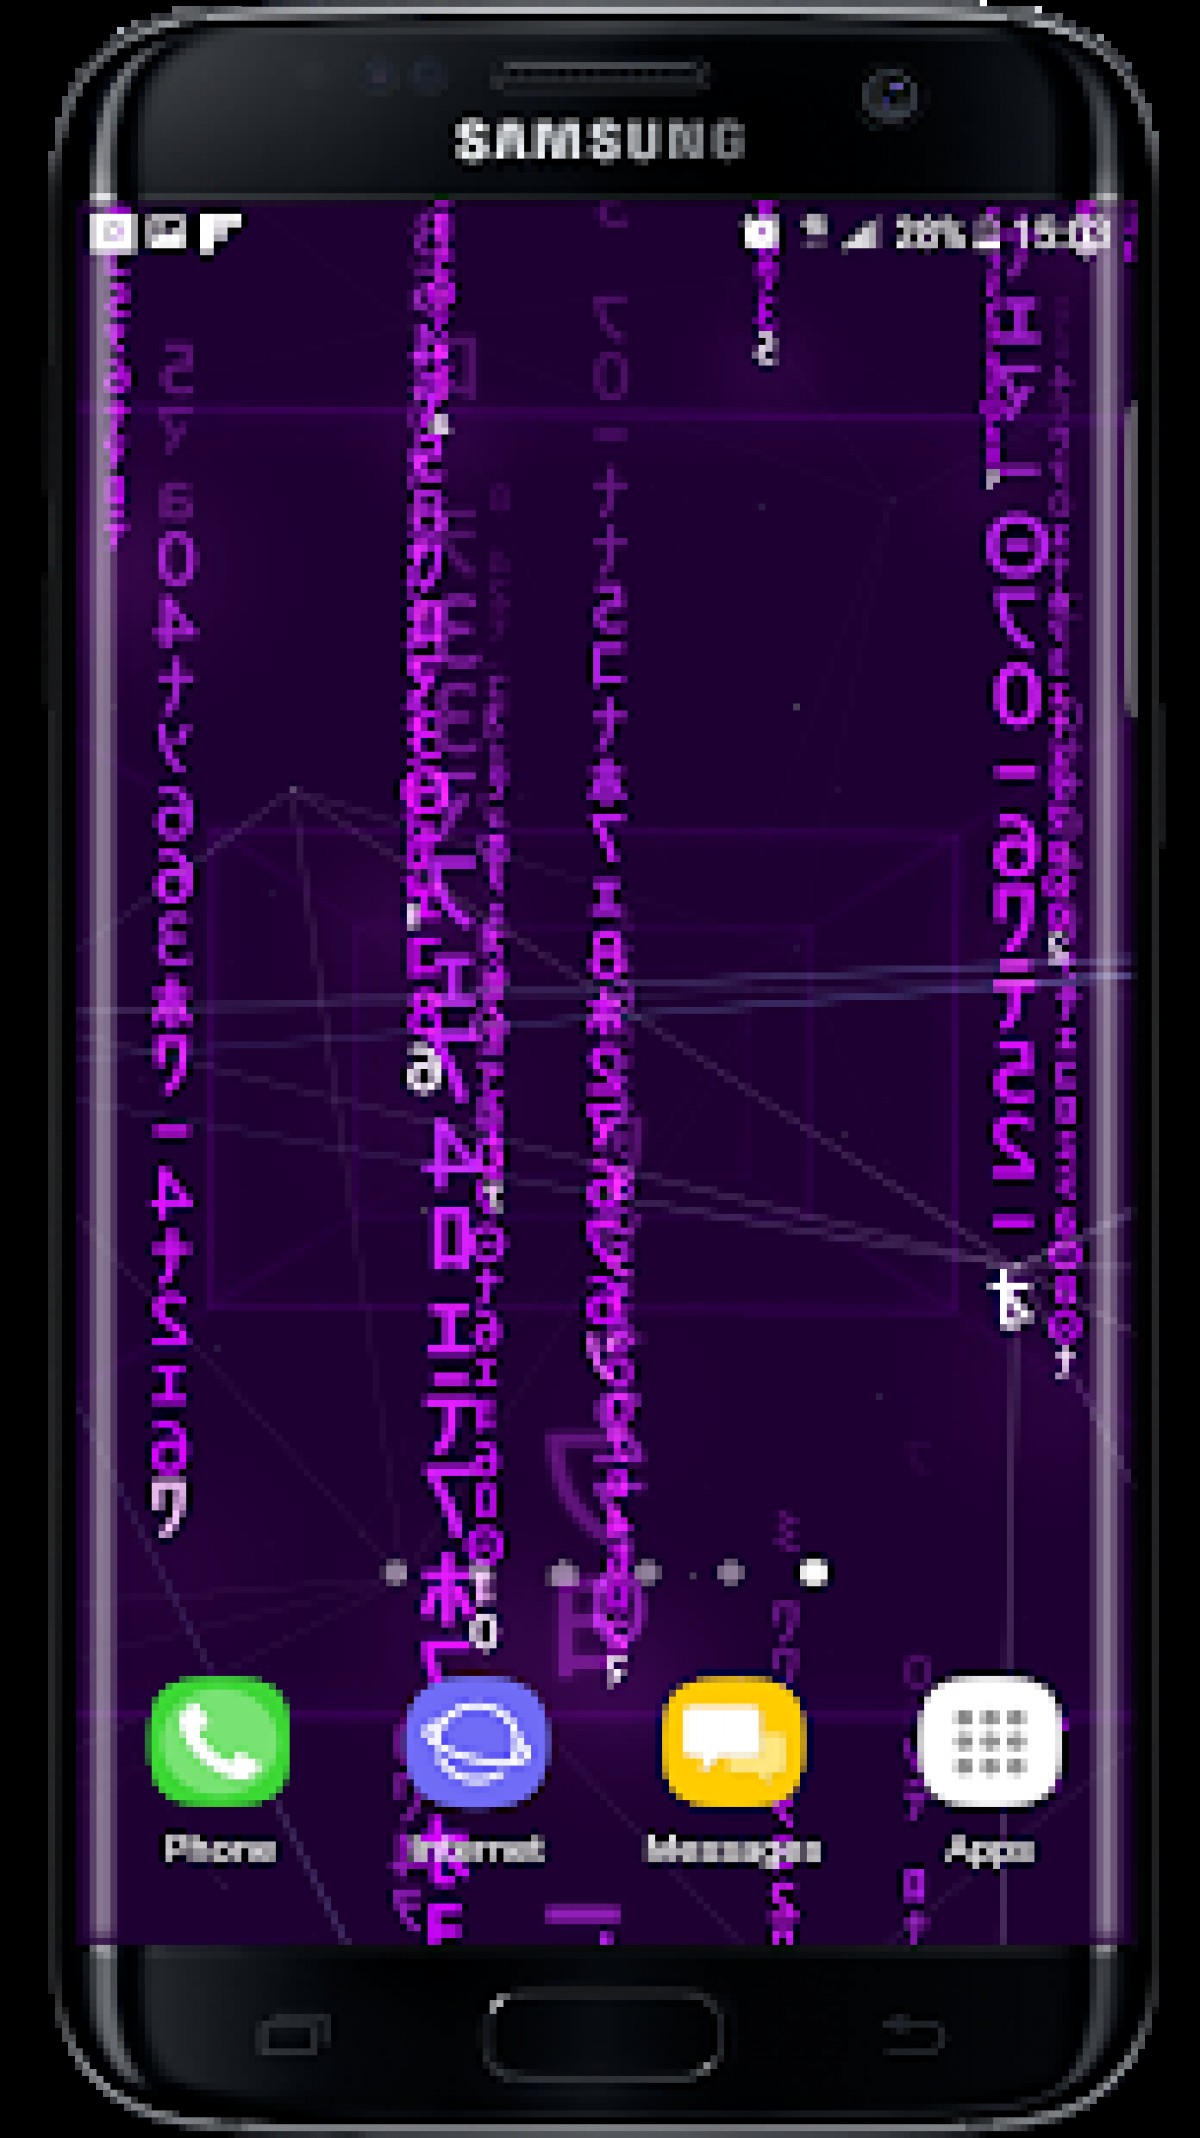 Digital Rain 3d Live Wallpaper V1 - Samsung Sgh G400l , HD Wallpaper & Backgrounds